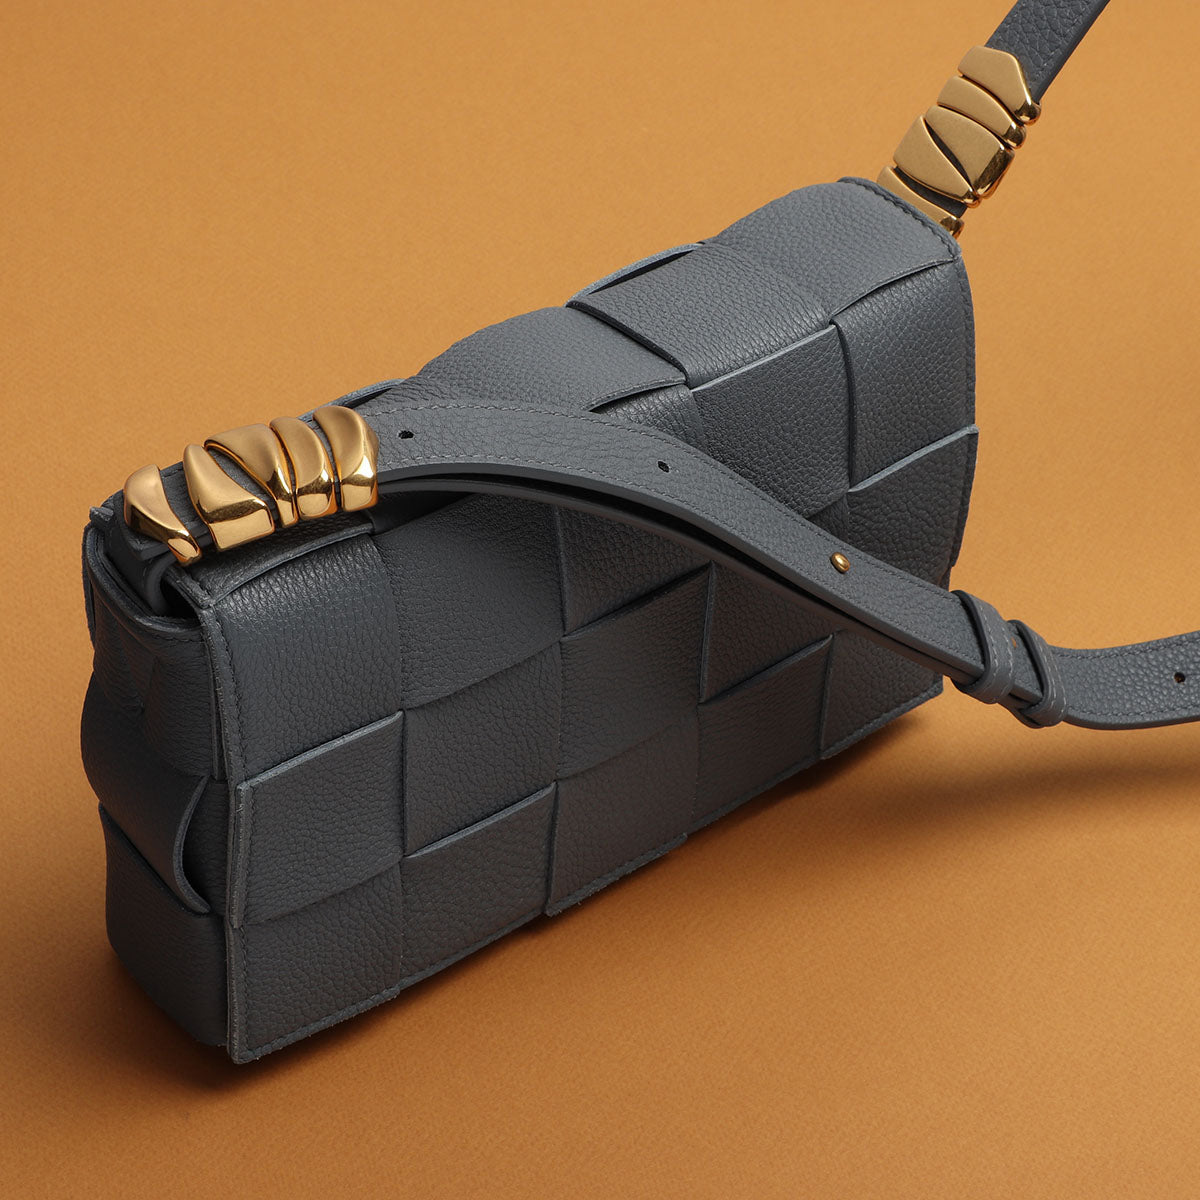 Bottega Veneta Thunder Cassette Woven Leather Crossbody Bag